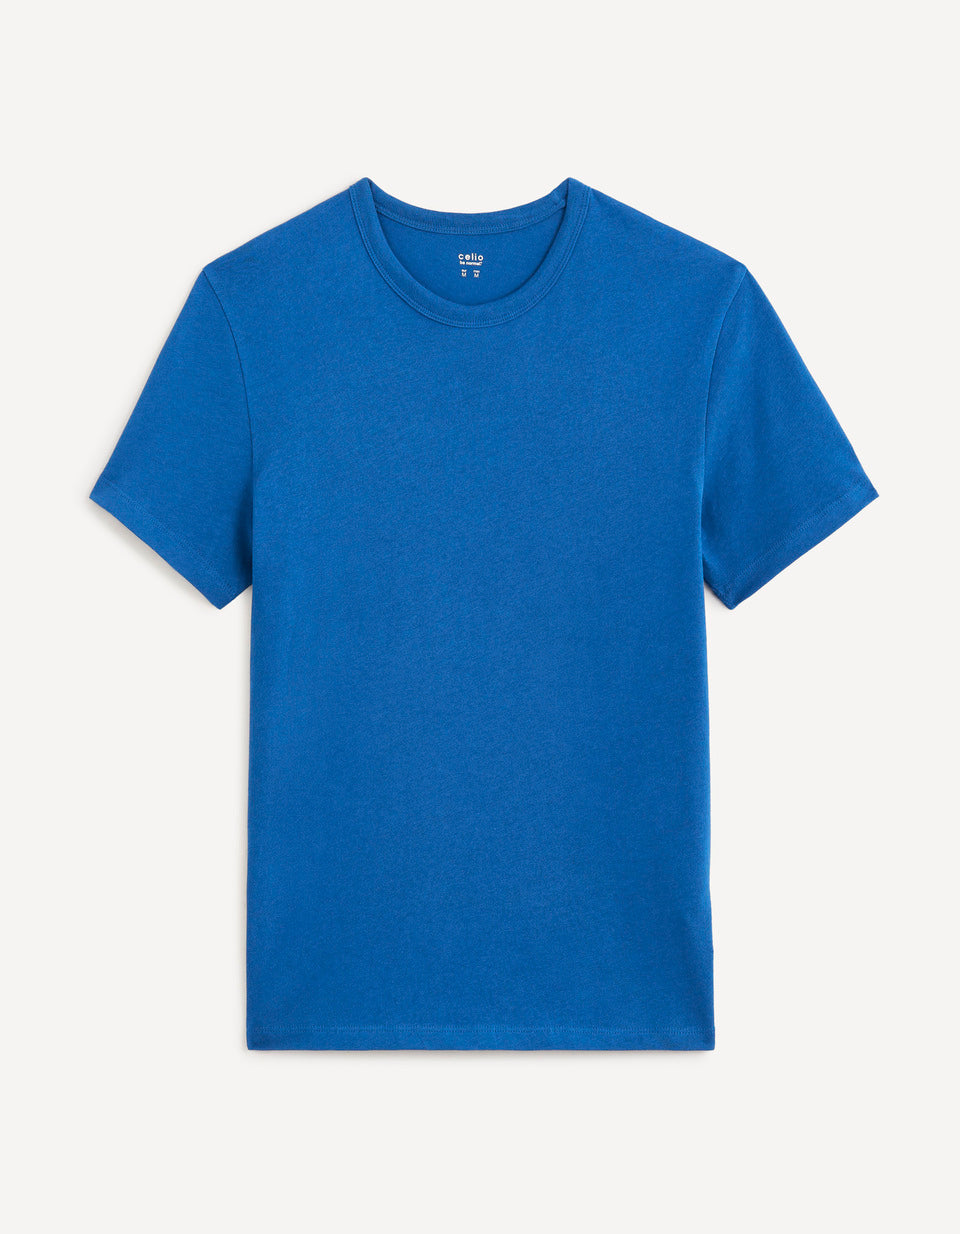 100% Cotton Round Neck T-Shirt - Blue - 04